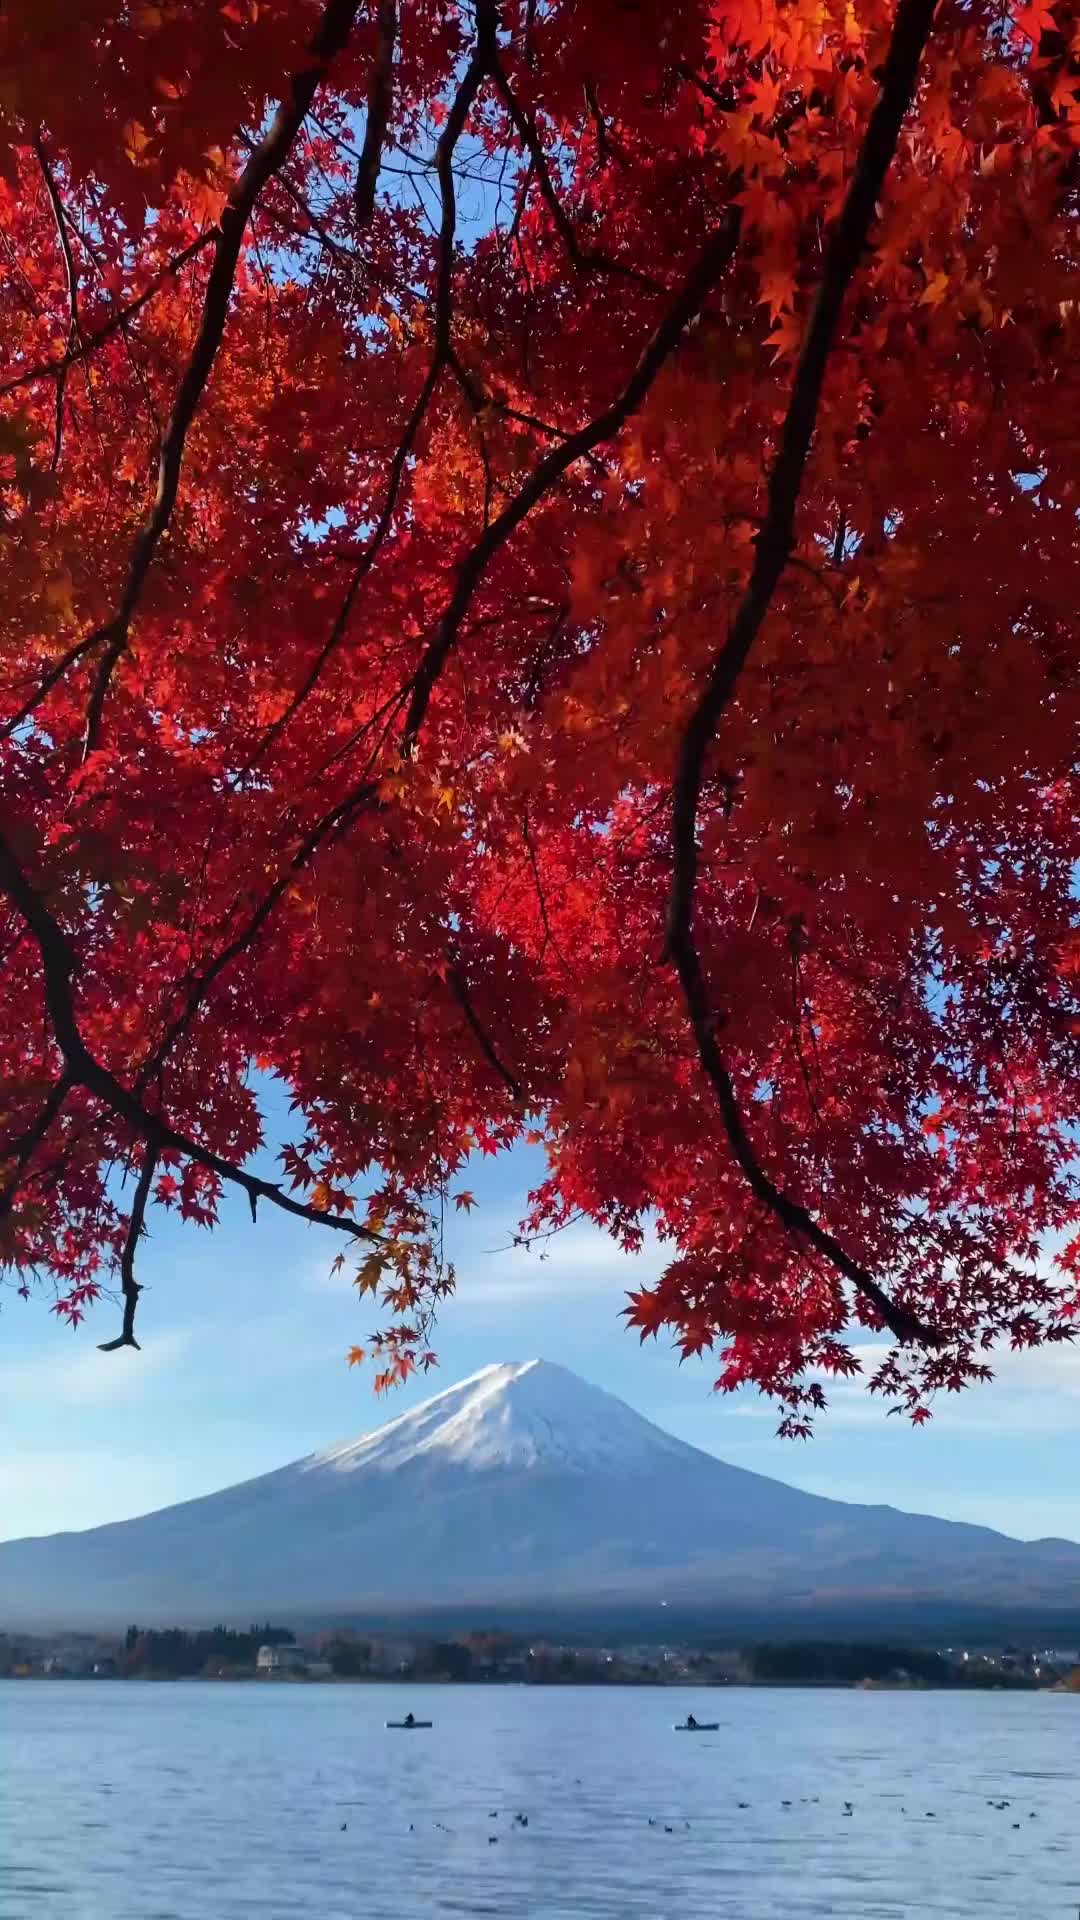 Autumn Beauty of Mt. Fuji - Explore More!